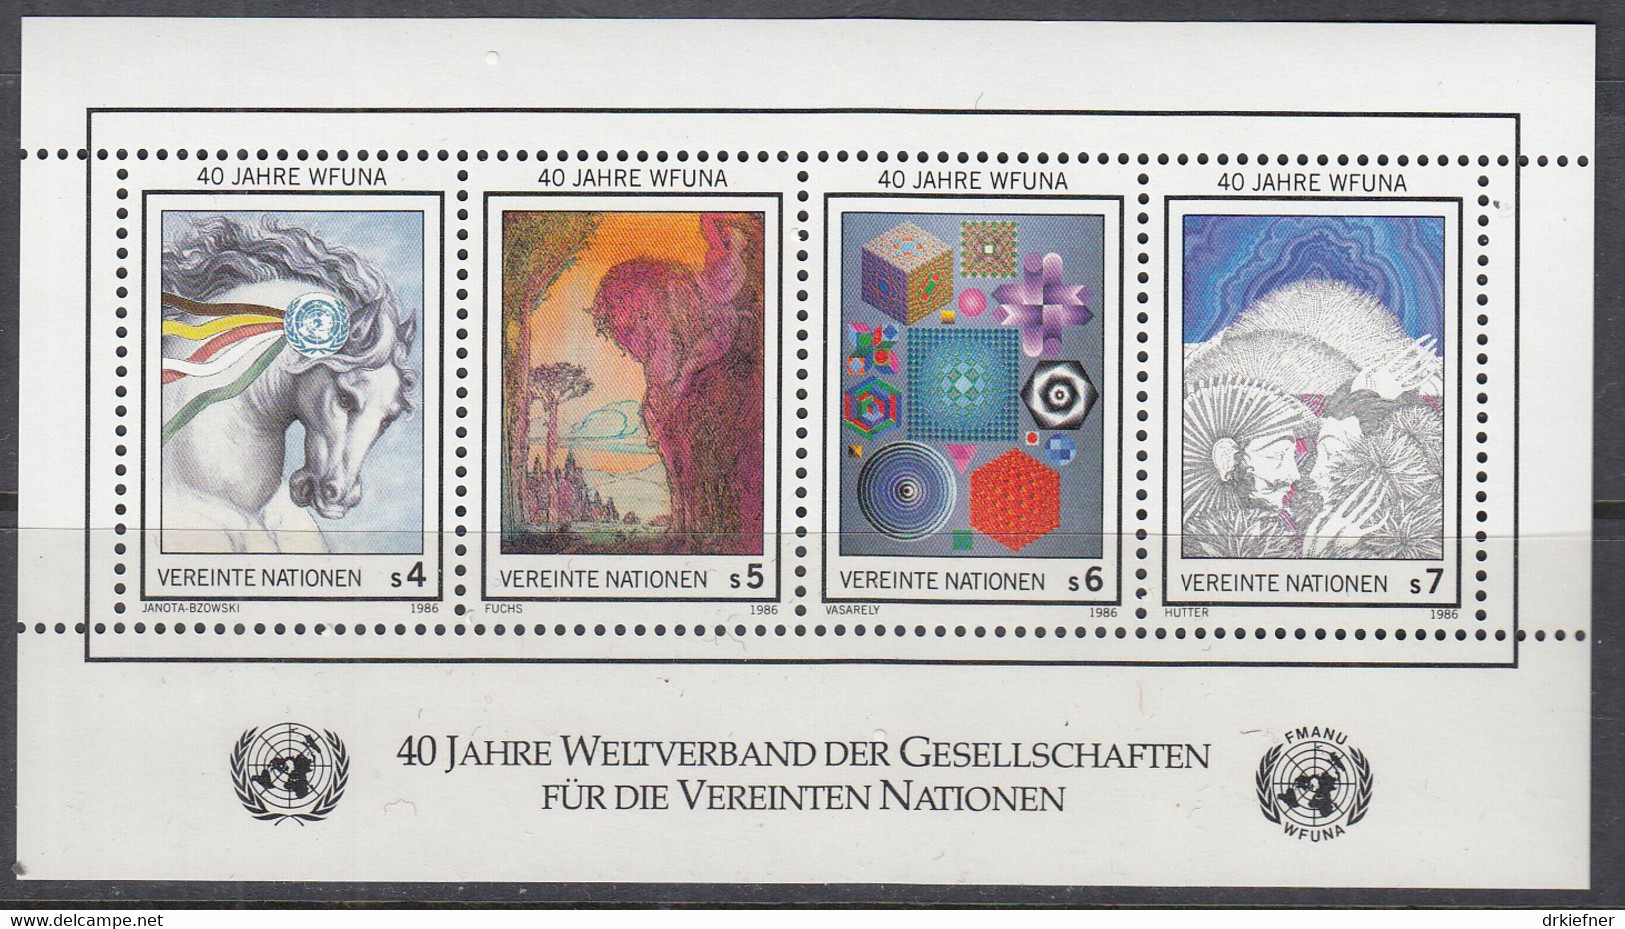 UNO WIEN  Block 3, Postfrisch **, 40 Jahre WFUNA, 1986 - Blocks & Sheetlets